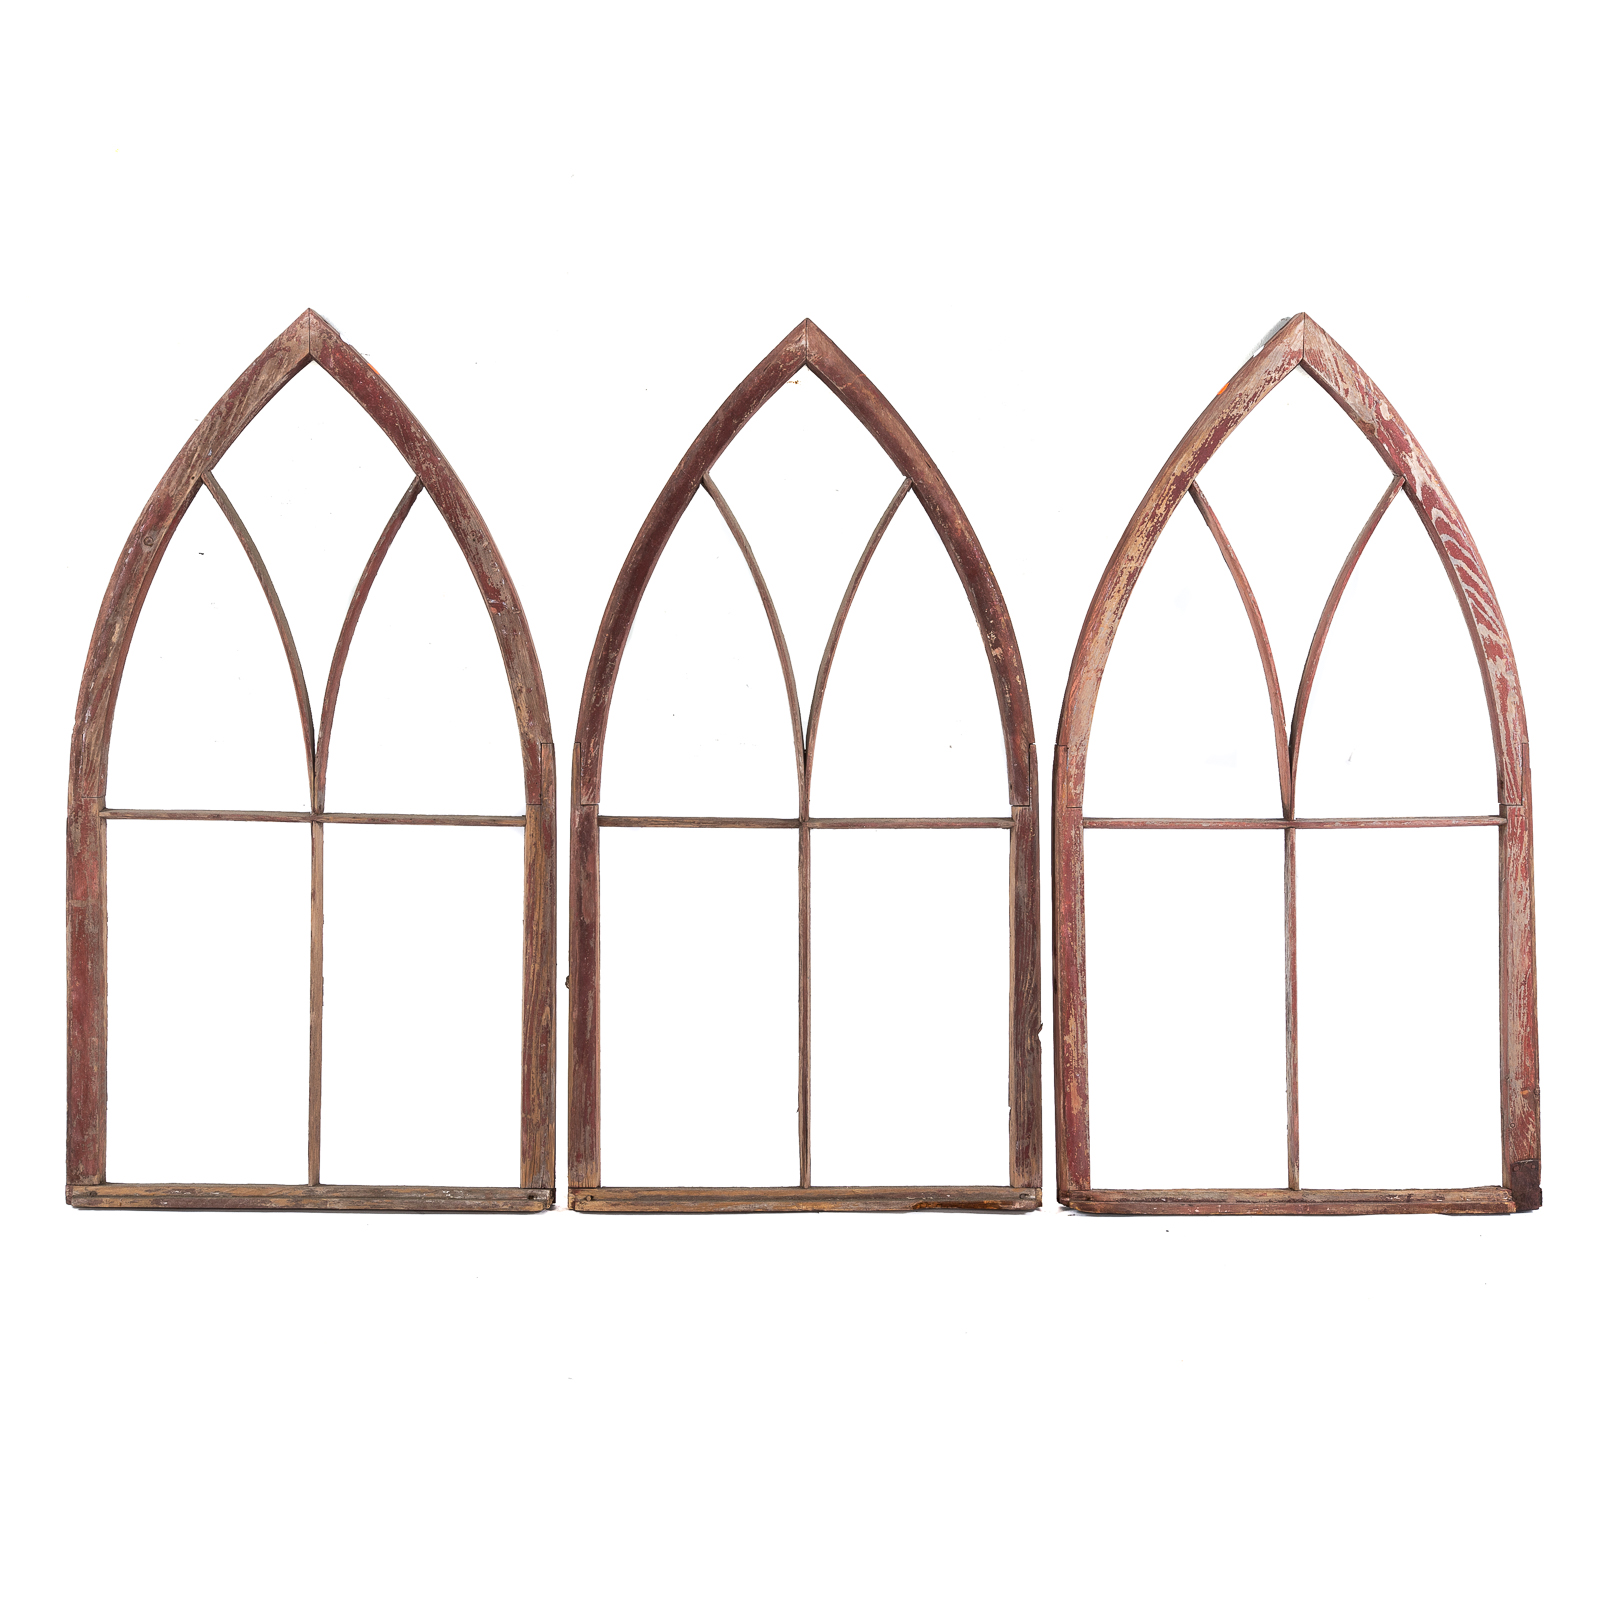 THREE GOTHIC WOOD WINDOW FRAMES 288925